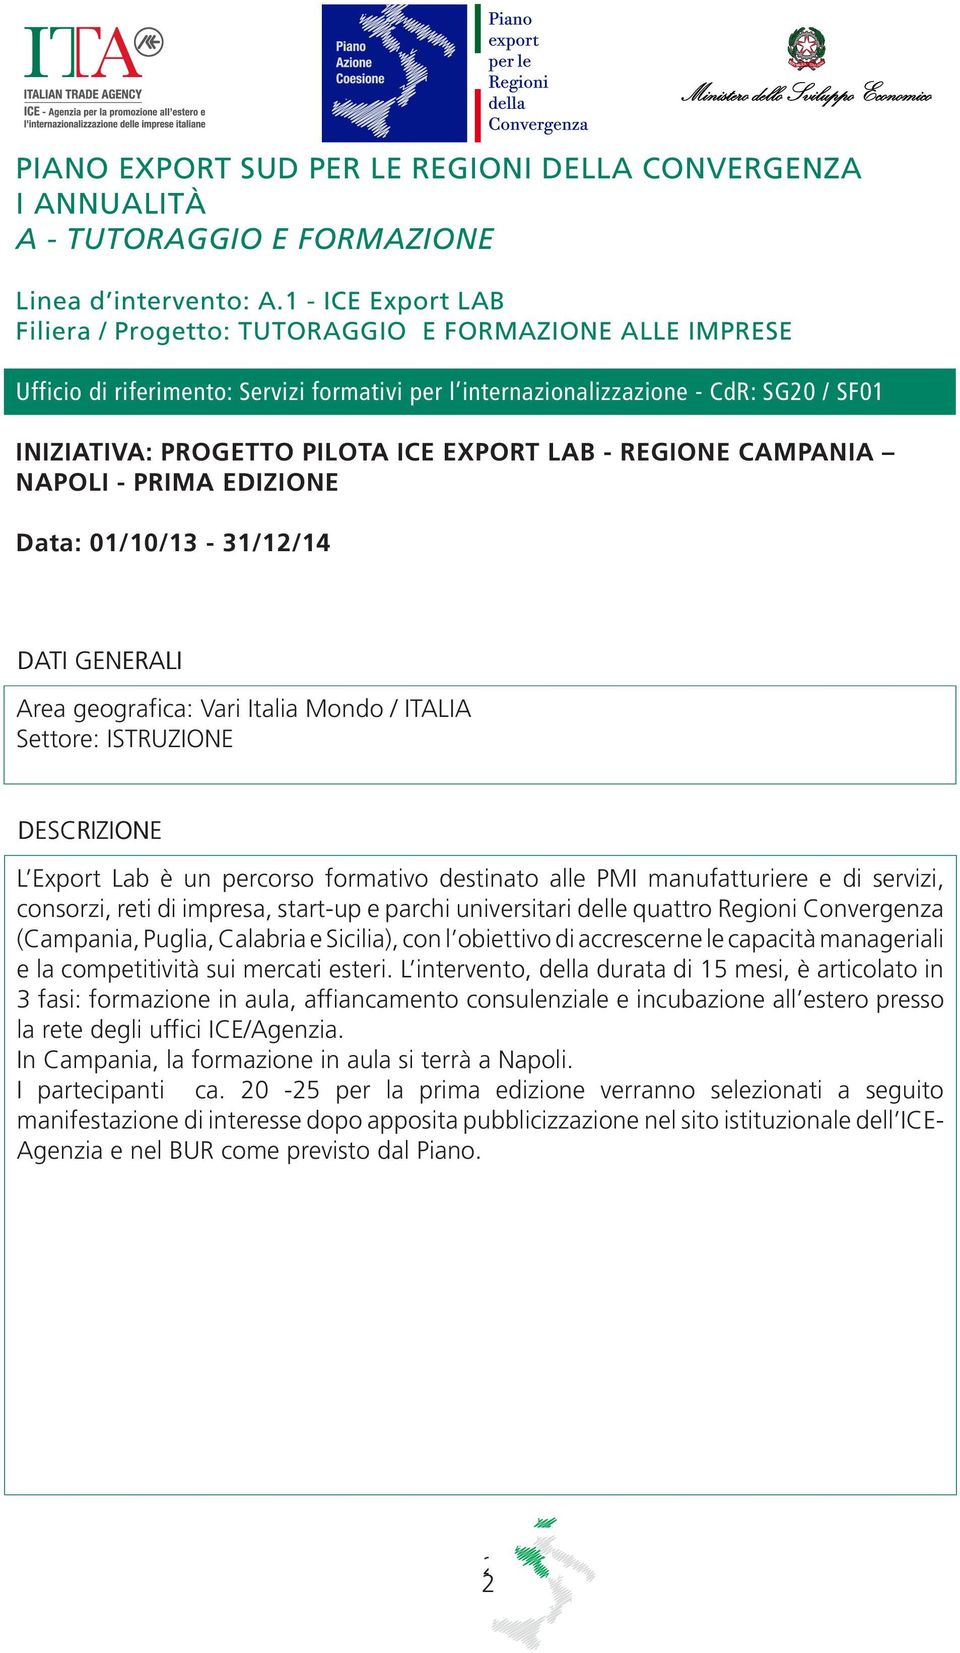 EXPORT LAB - REGIONE CAMPANIA NAPOLI - PRIMA EDIZIONE Data: 01/10/13-31/12/14 Area geografica: Vari Italia Mondo / ITALIA Settore: ISTRUZIONE L Export Lab è un percorso formativo destinato alle PMI